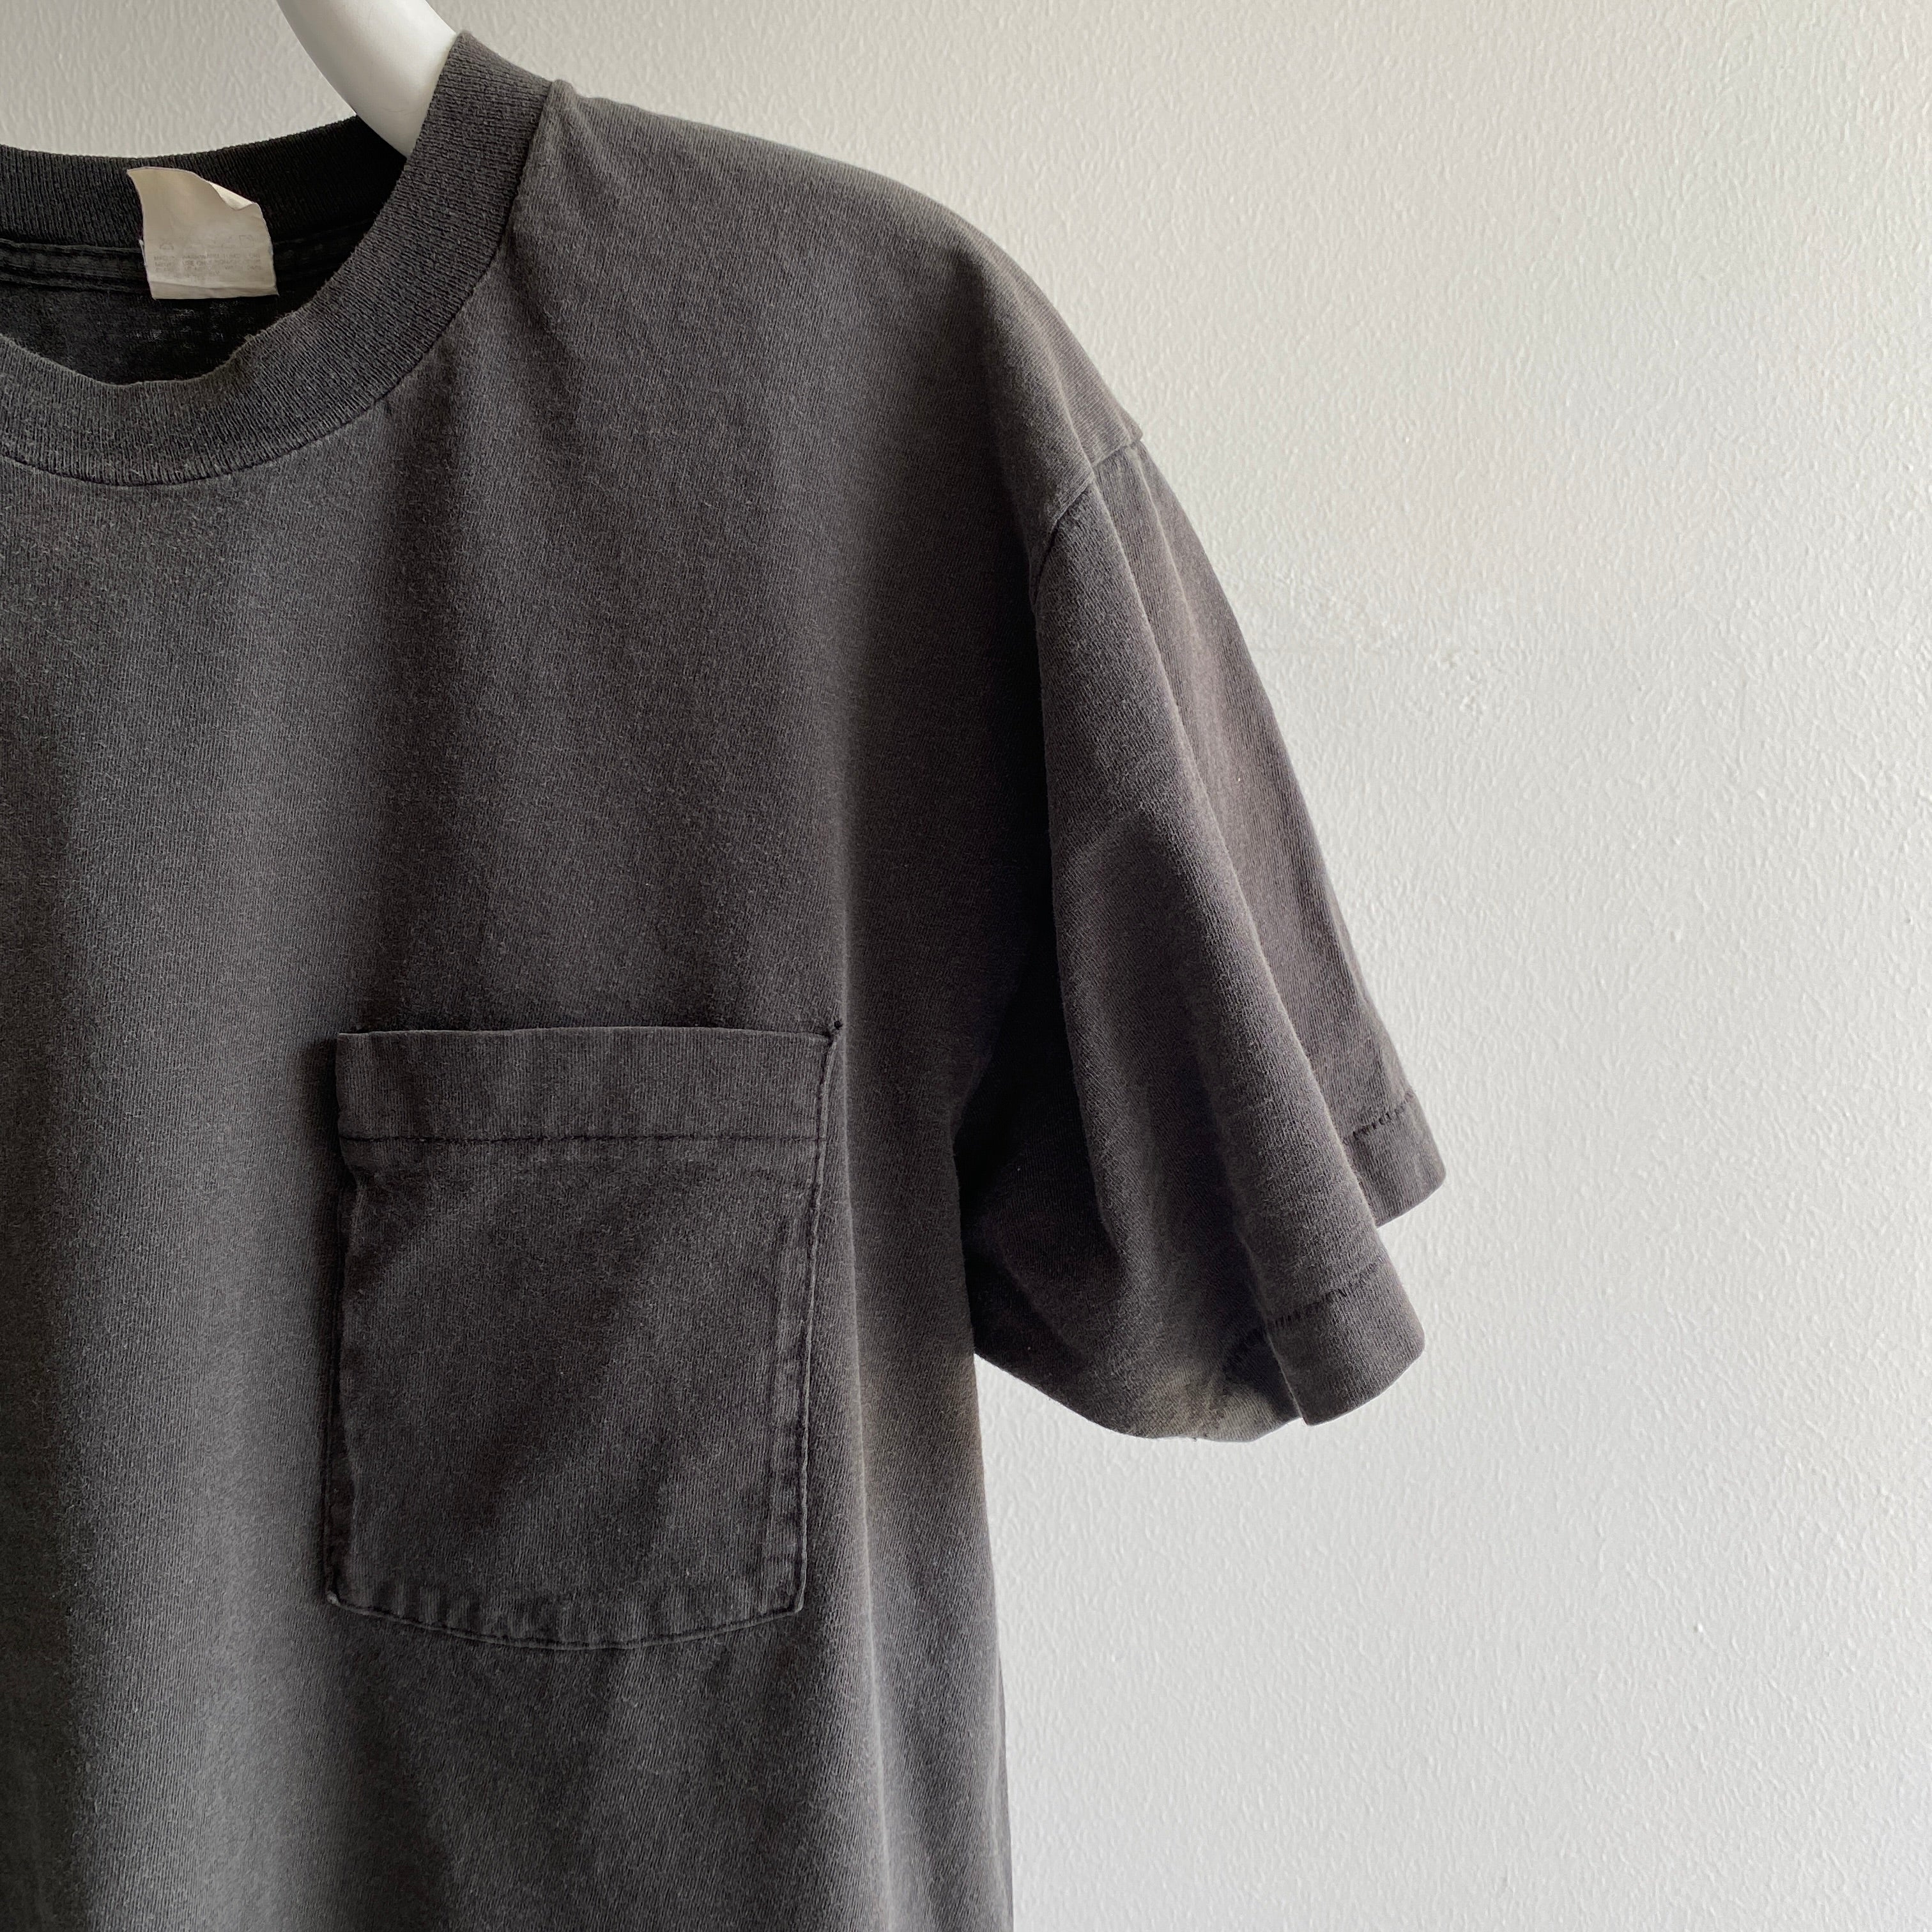 T-shirt de poche délavé noir en coton FOTL des années 1980